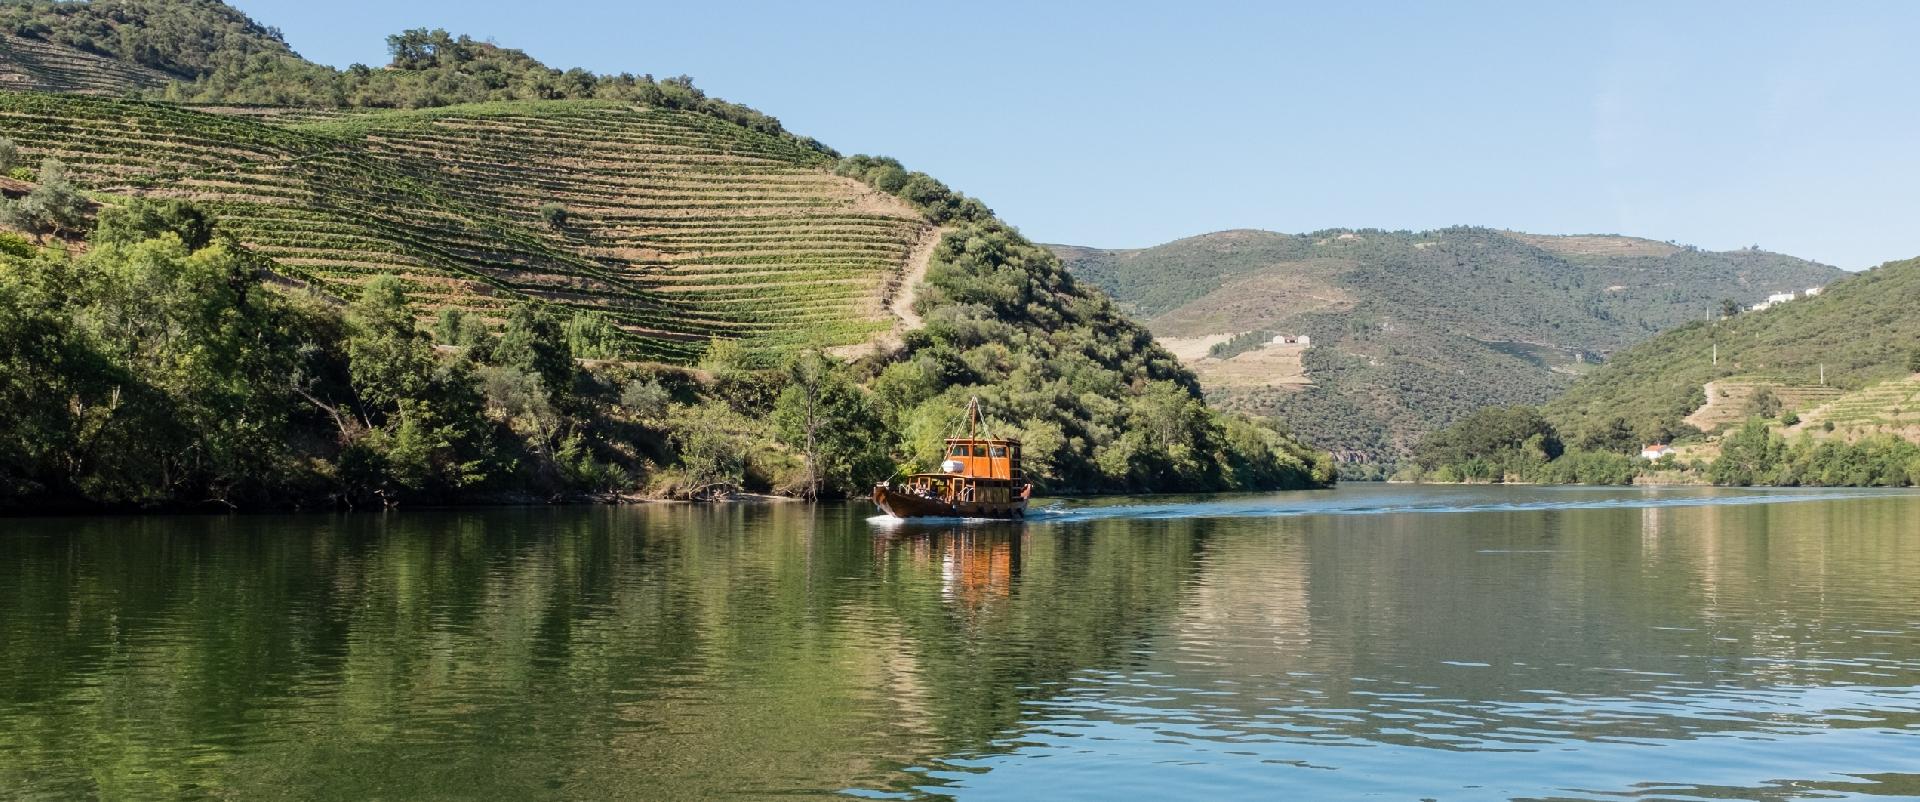 FaÃ§a um mapa dos afluentes do rio Douro e explore-os de ponta a ponta!